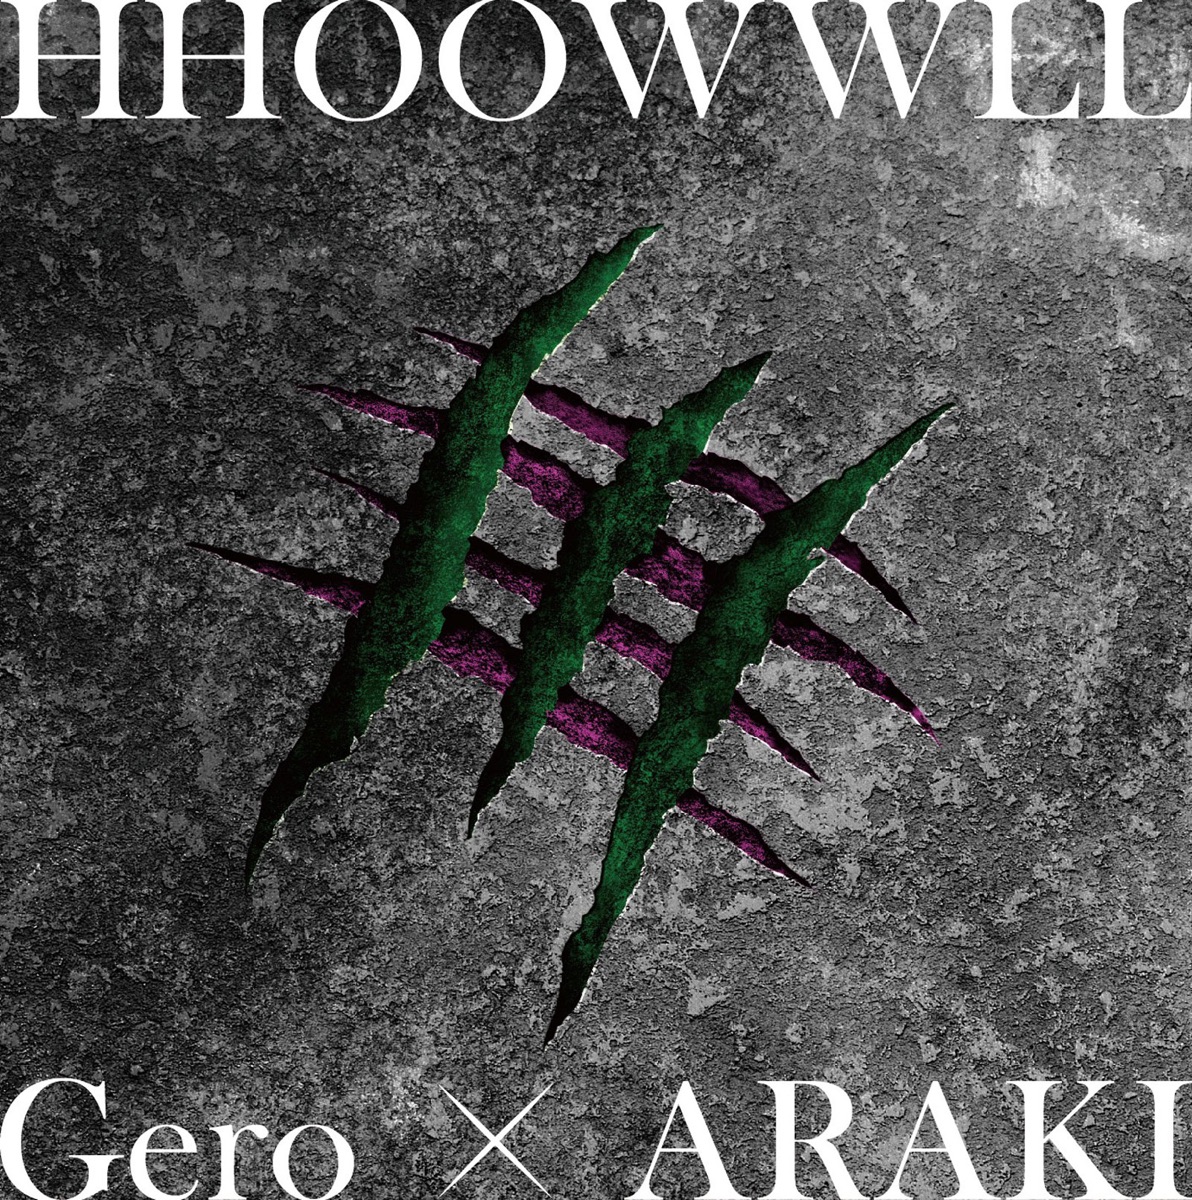 『Gero×ARAKI - HHOOWWLL 歌詞』収録の『HHOOWWLL』ジャケット